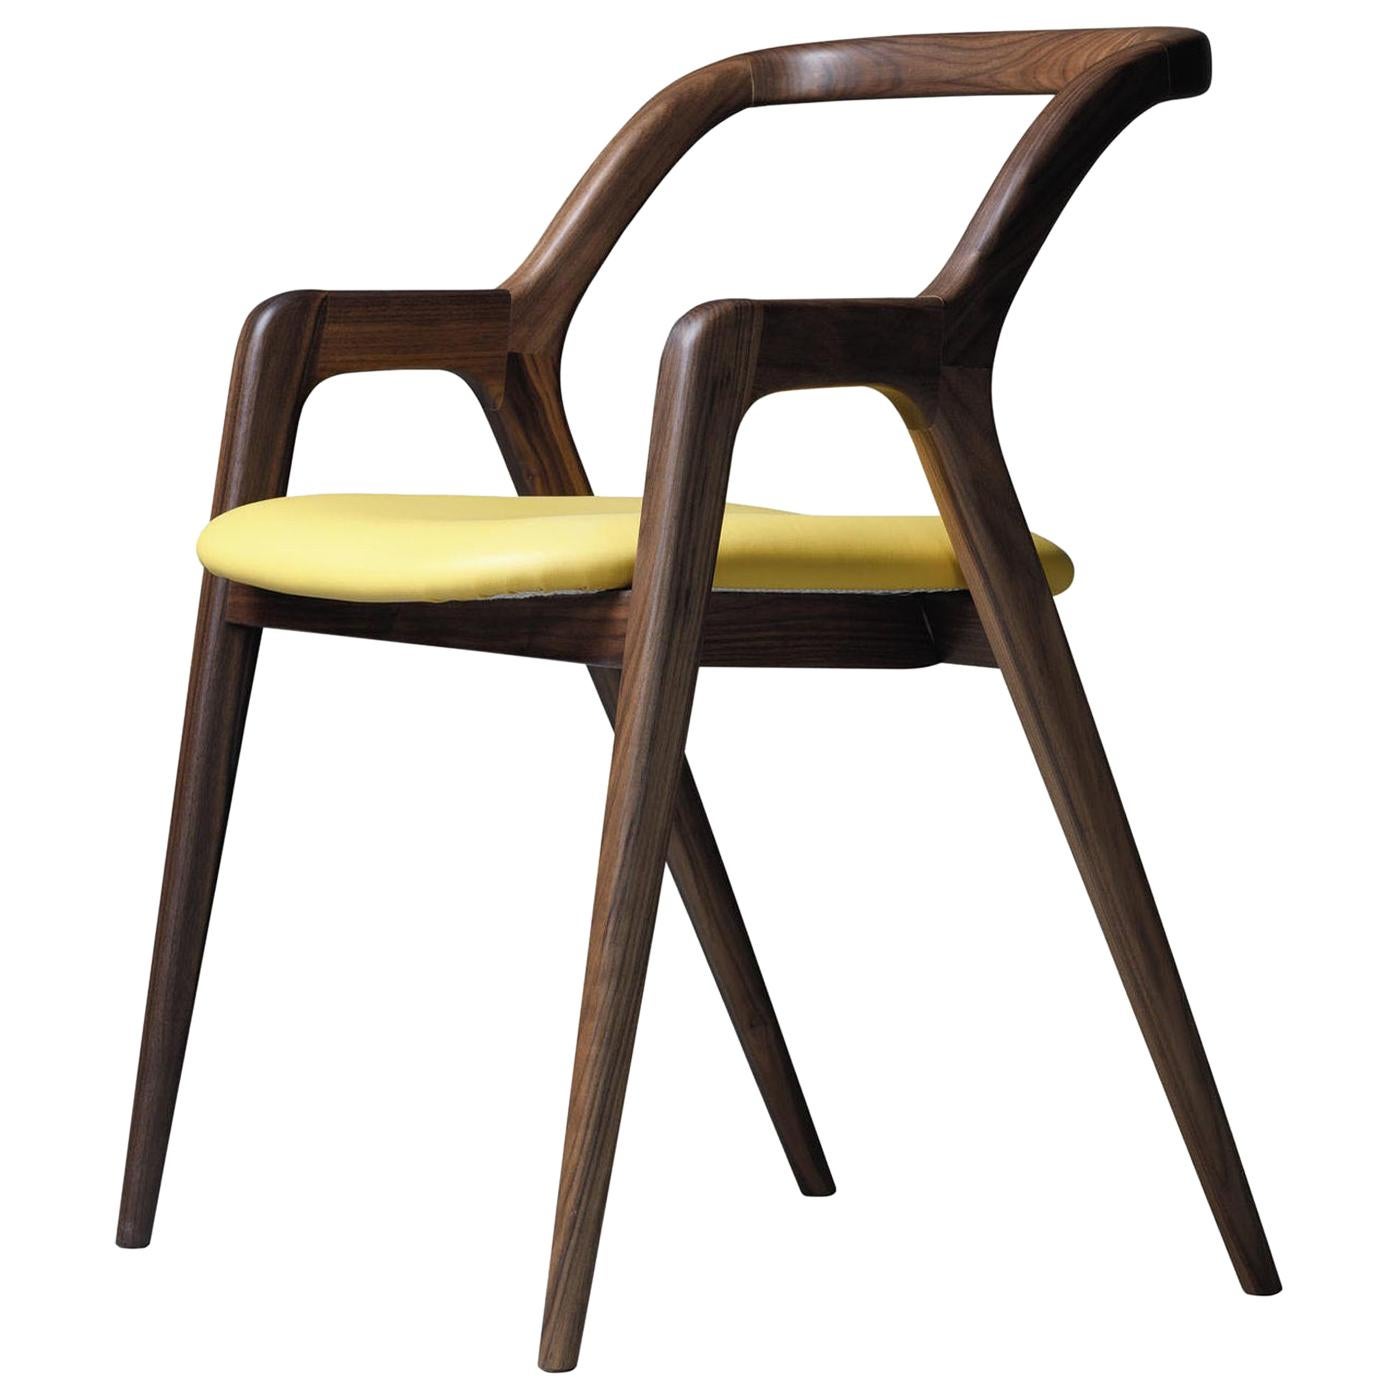 Design Walnut Chair